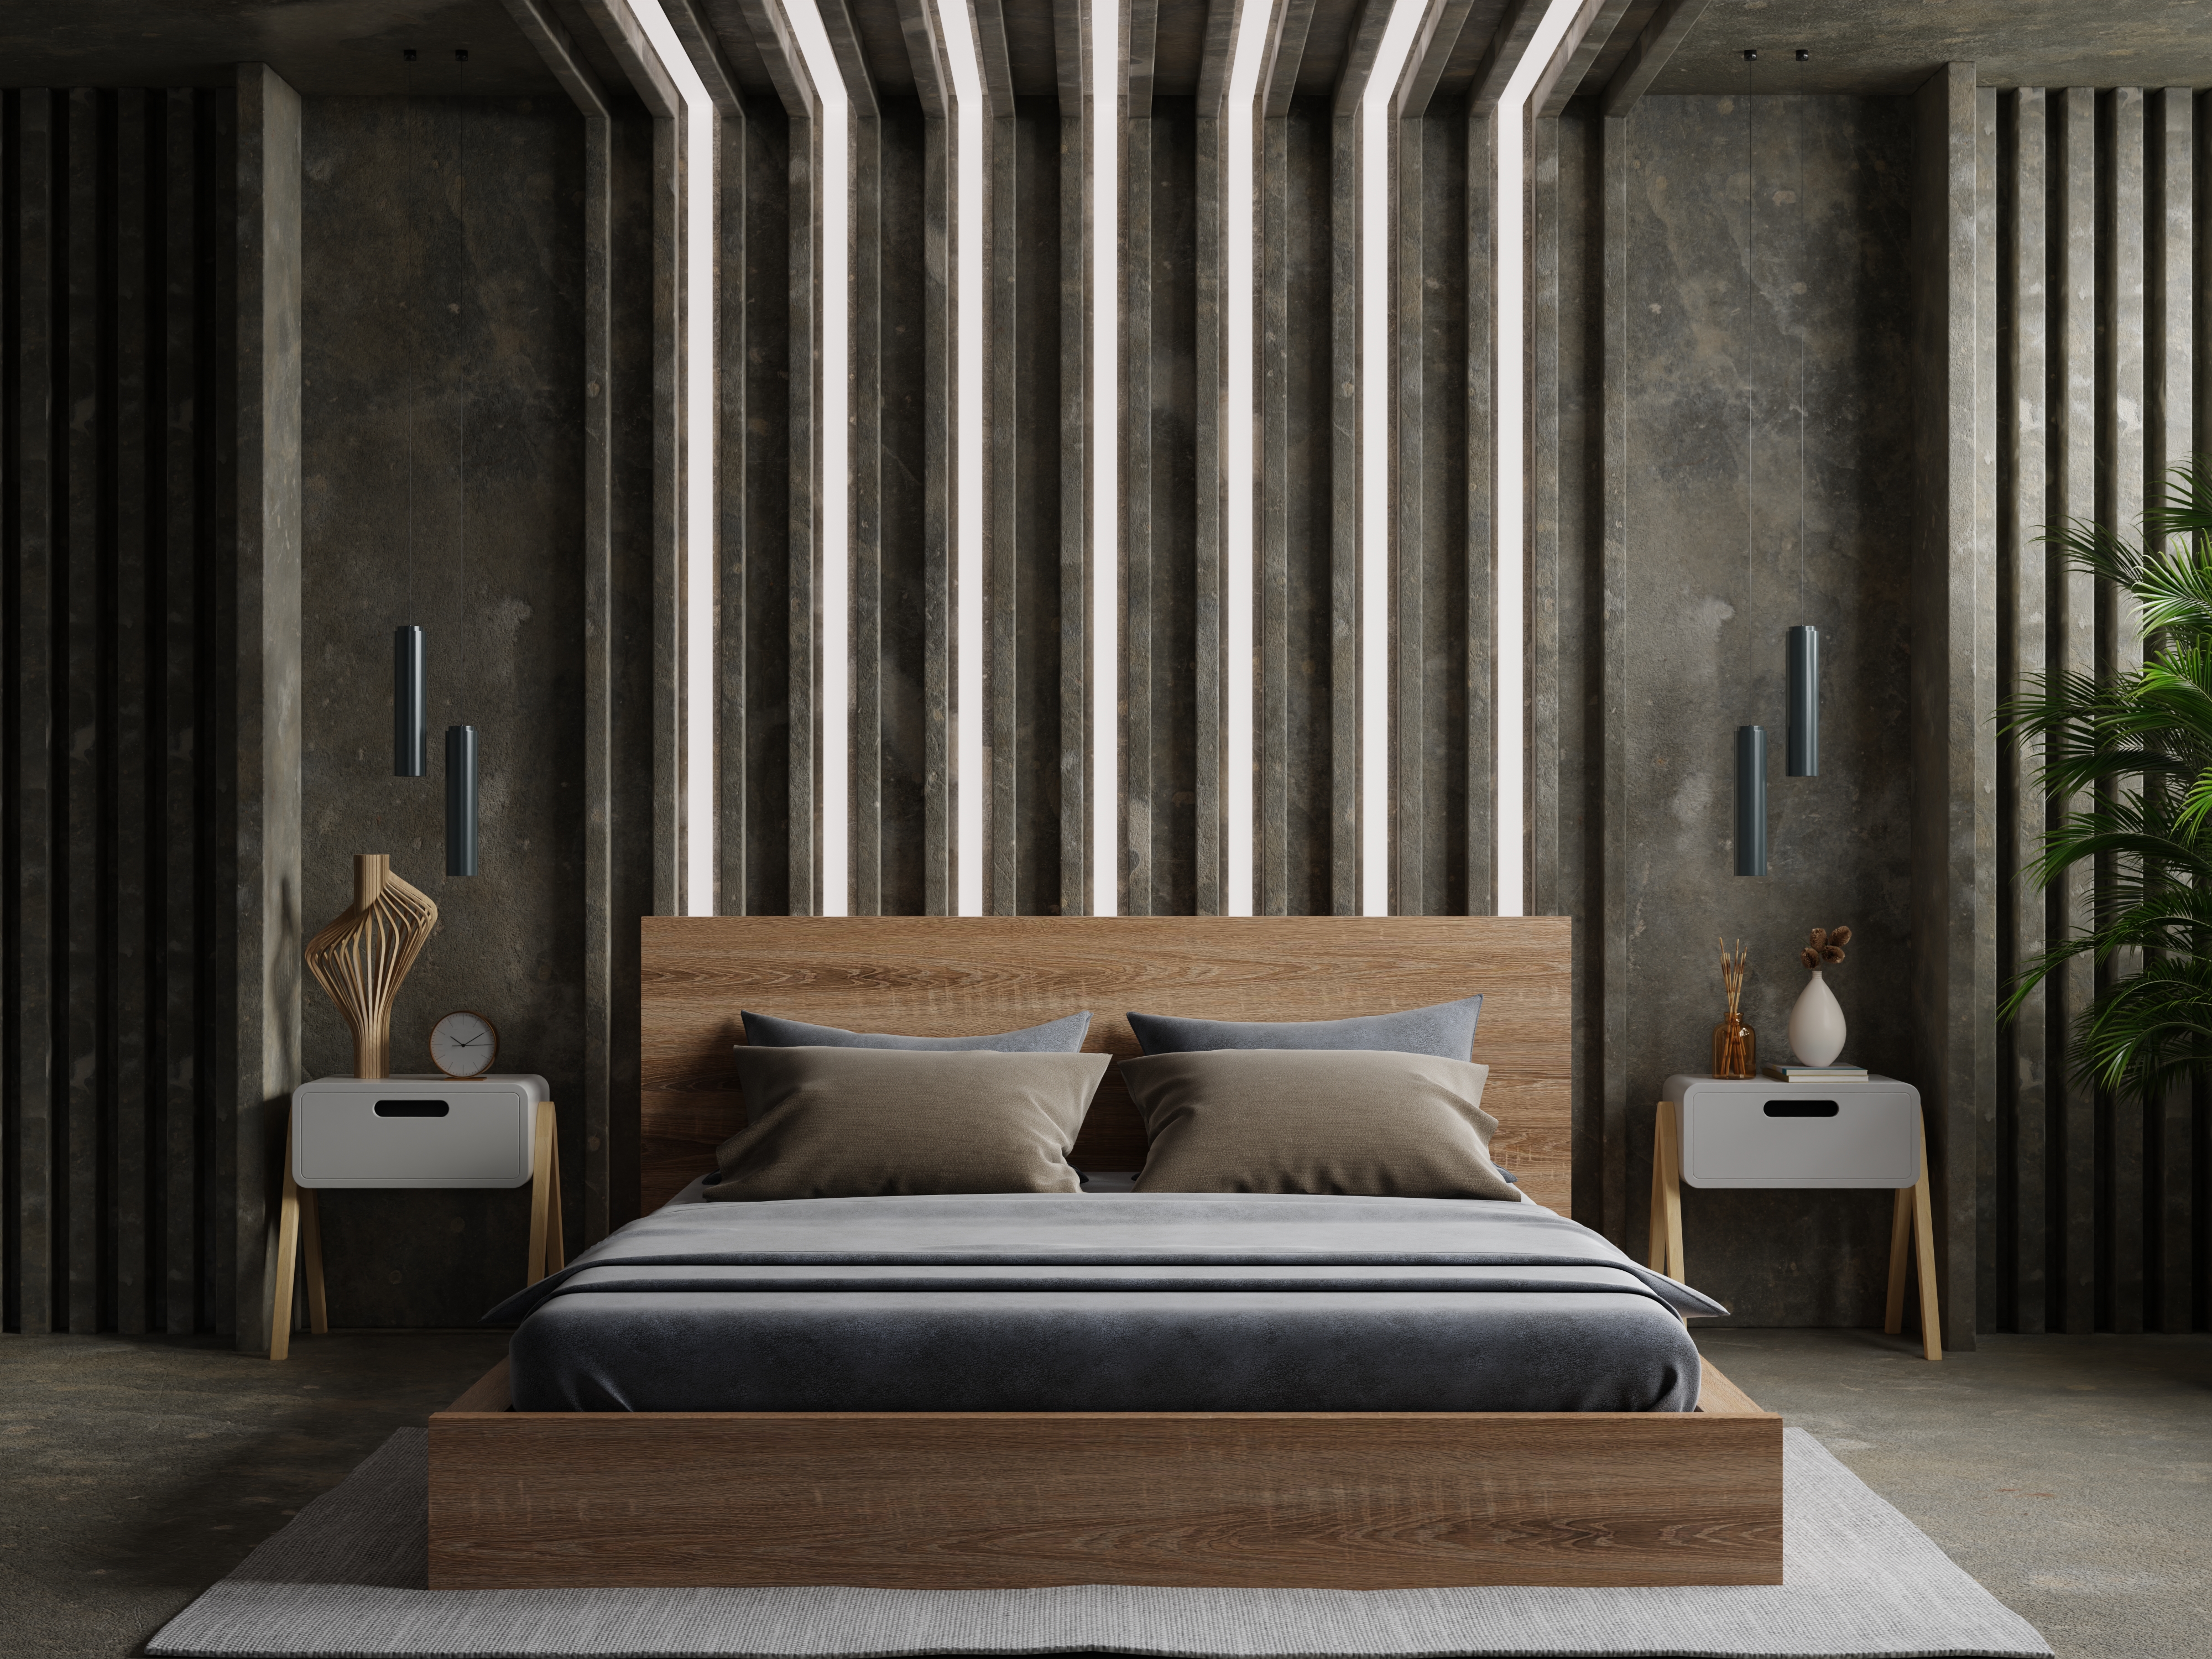 Bedroom interior design concept idea and concrete wall.